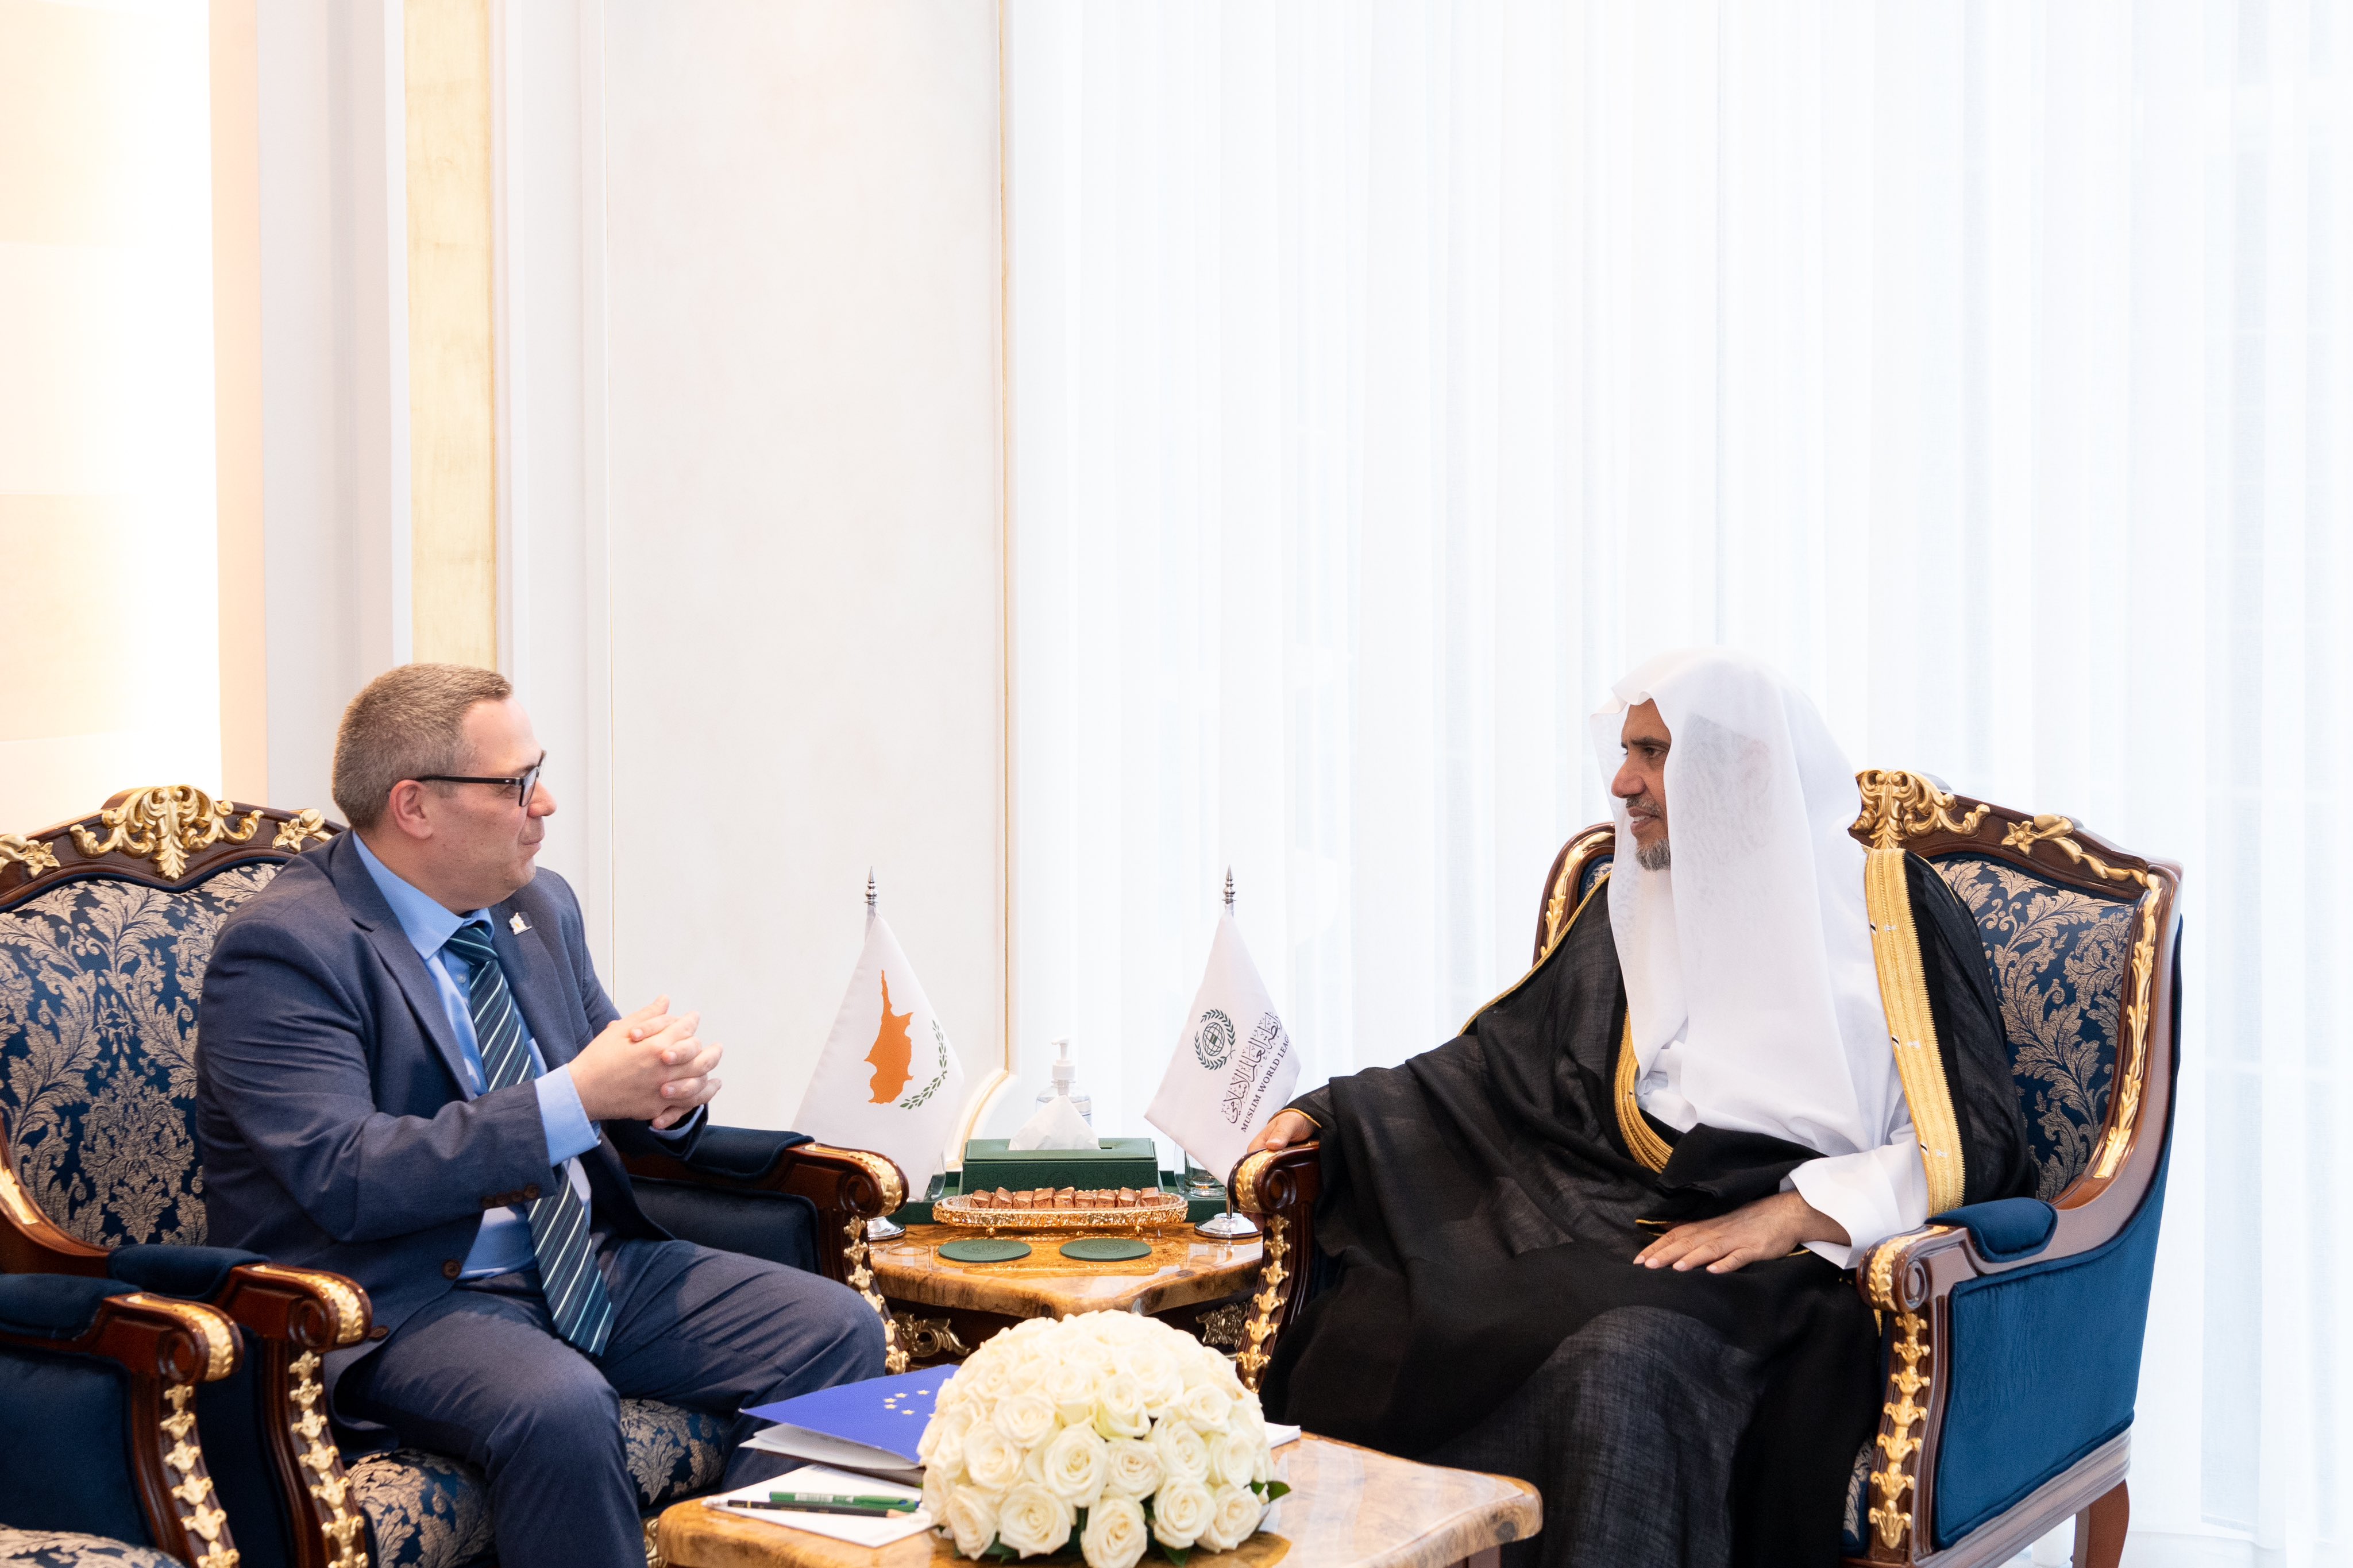 سیکرٹری جنرل عزت مآب شیخ ڈاکٹر محمد العيسى   نے اپنے ریاض دفتر میں مملکت سعودی عرب میں متعین قبرص کے سفیر جناب مائیکل الیکسیوس فیڈونس سے ملاقات کی۔